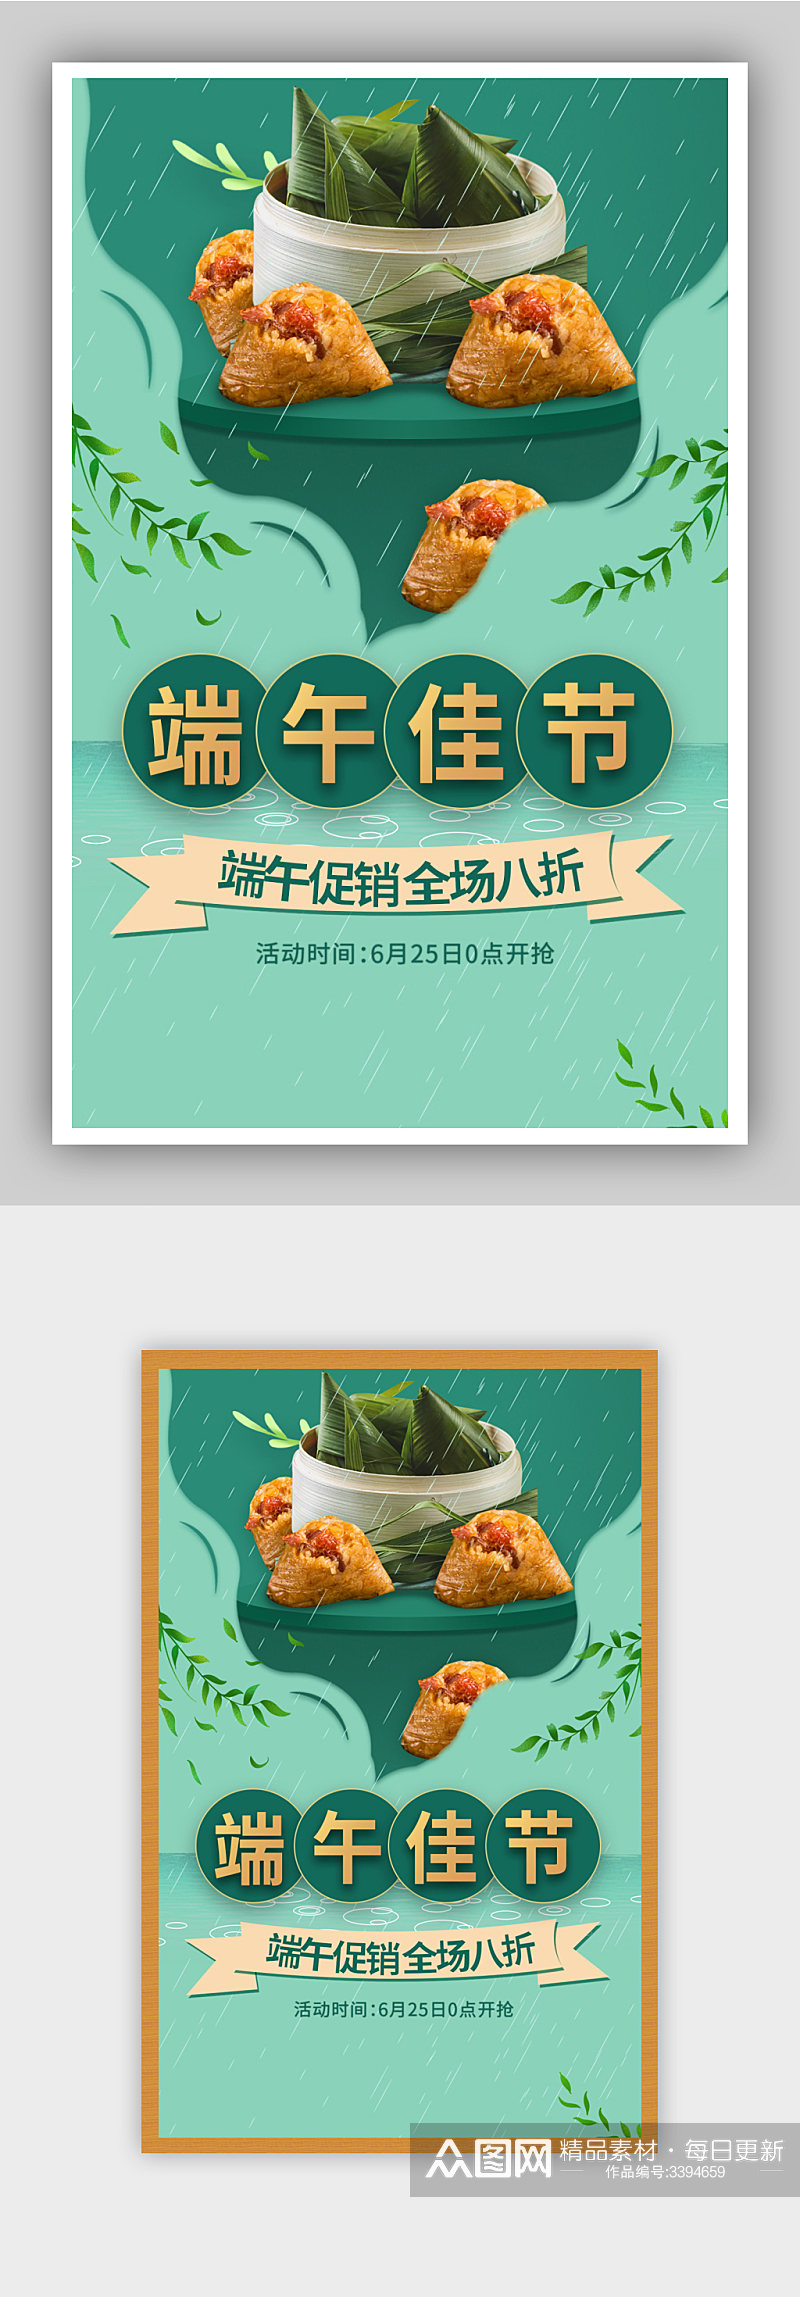 粽享端午绿色粽子美食食品土特产海报素材